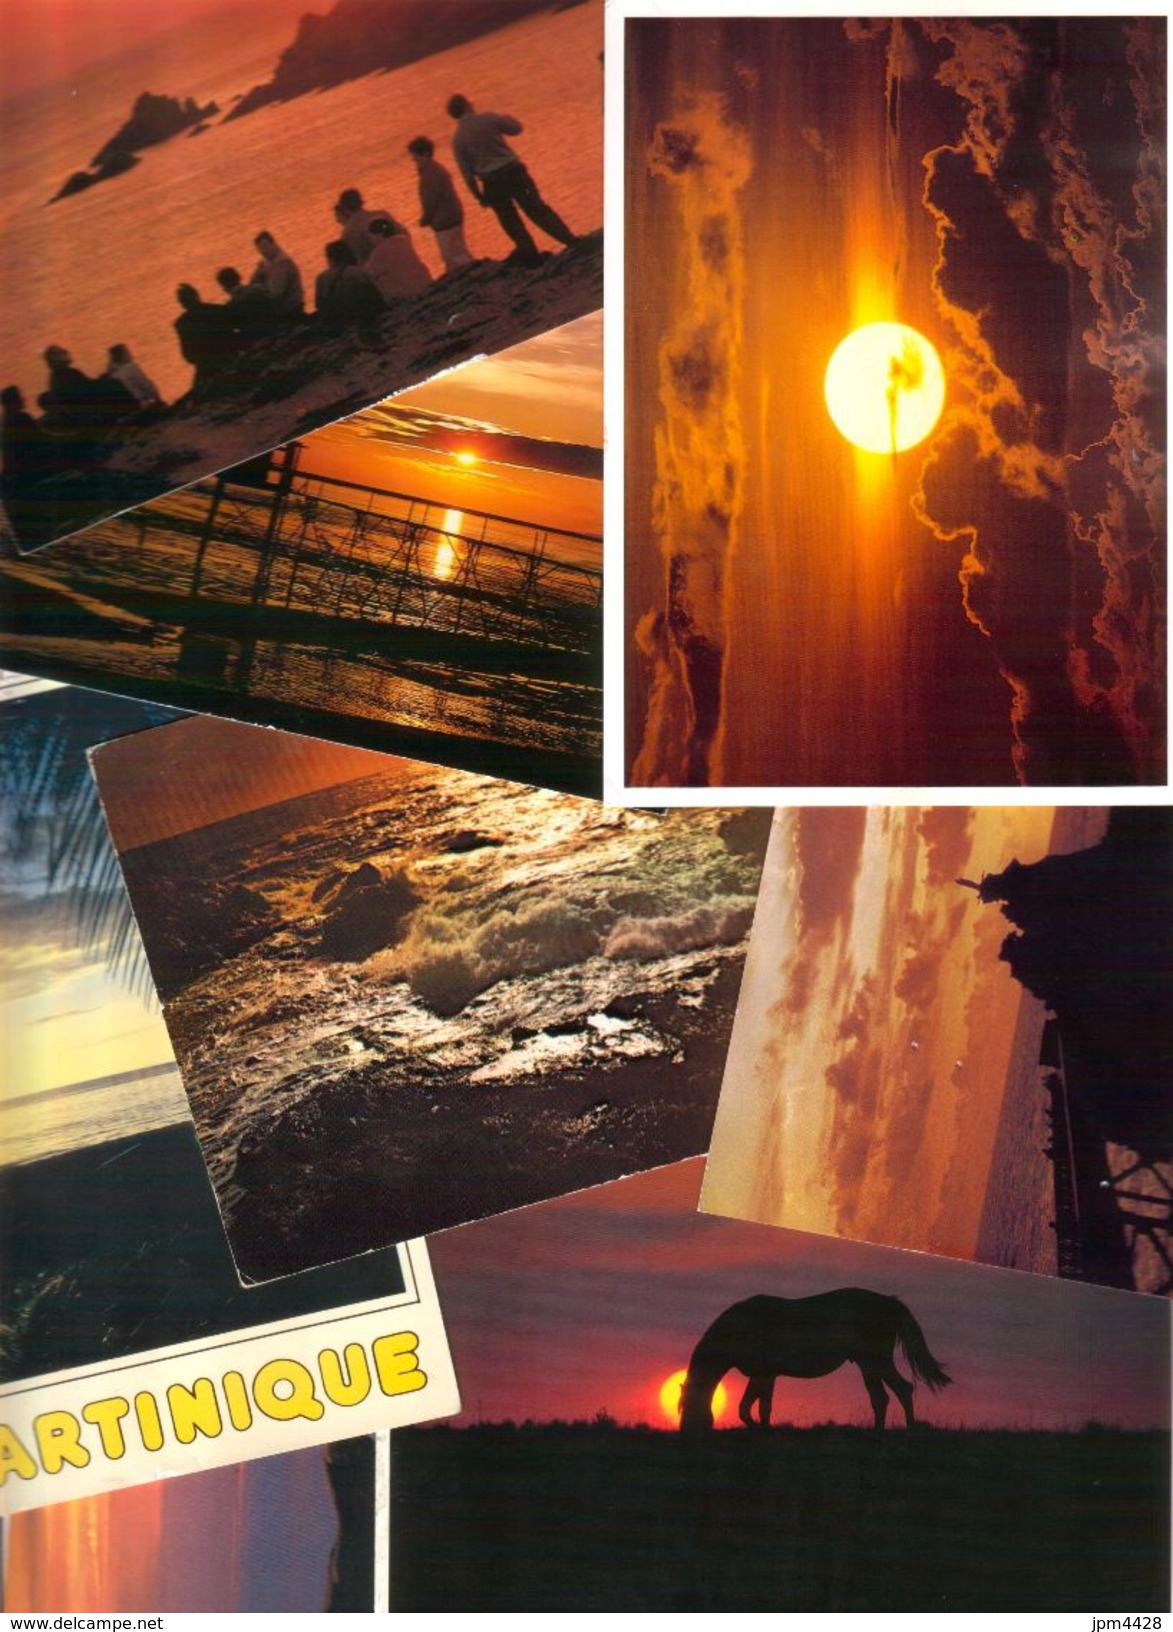 Carte Postale - lot 119 cartes postales Coucher de soleil - une partie neuves, une partie écrites état bon, petit prix